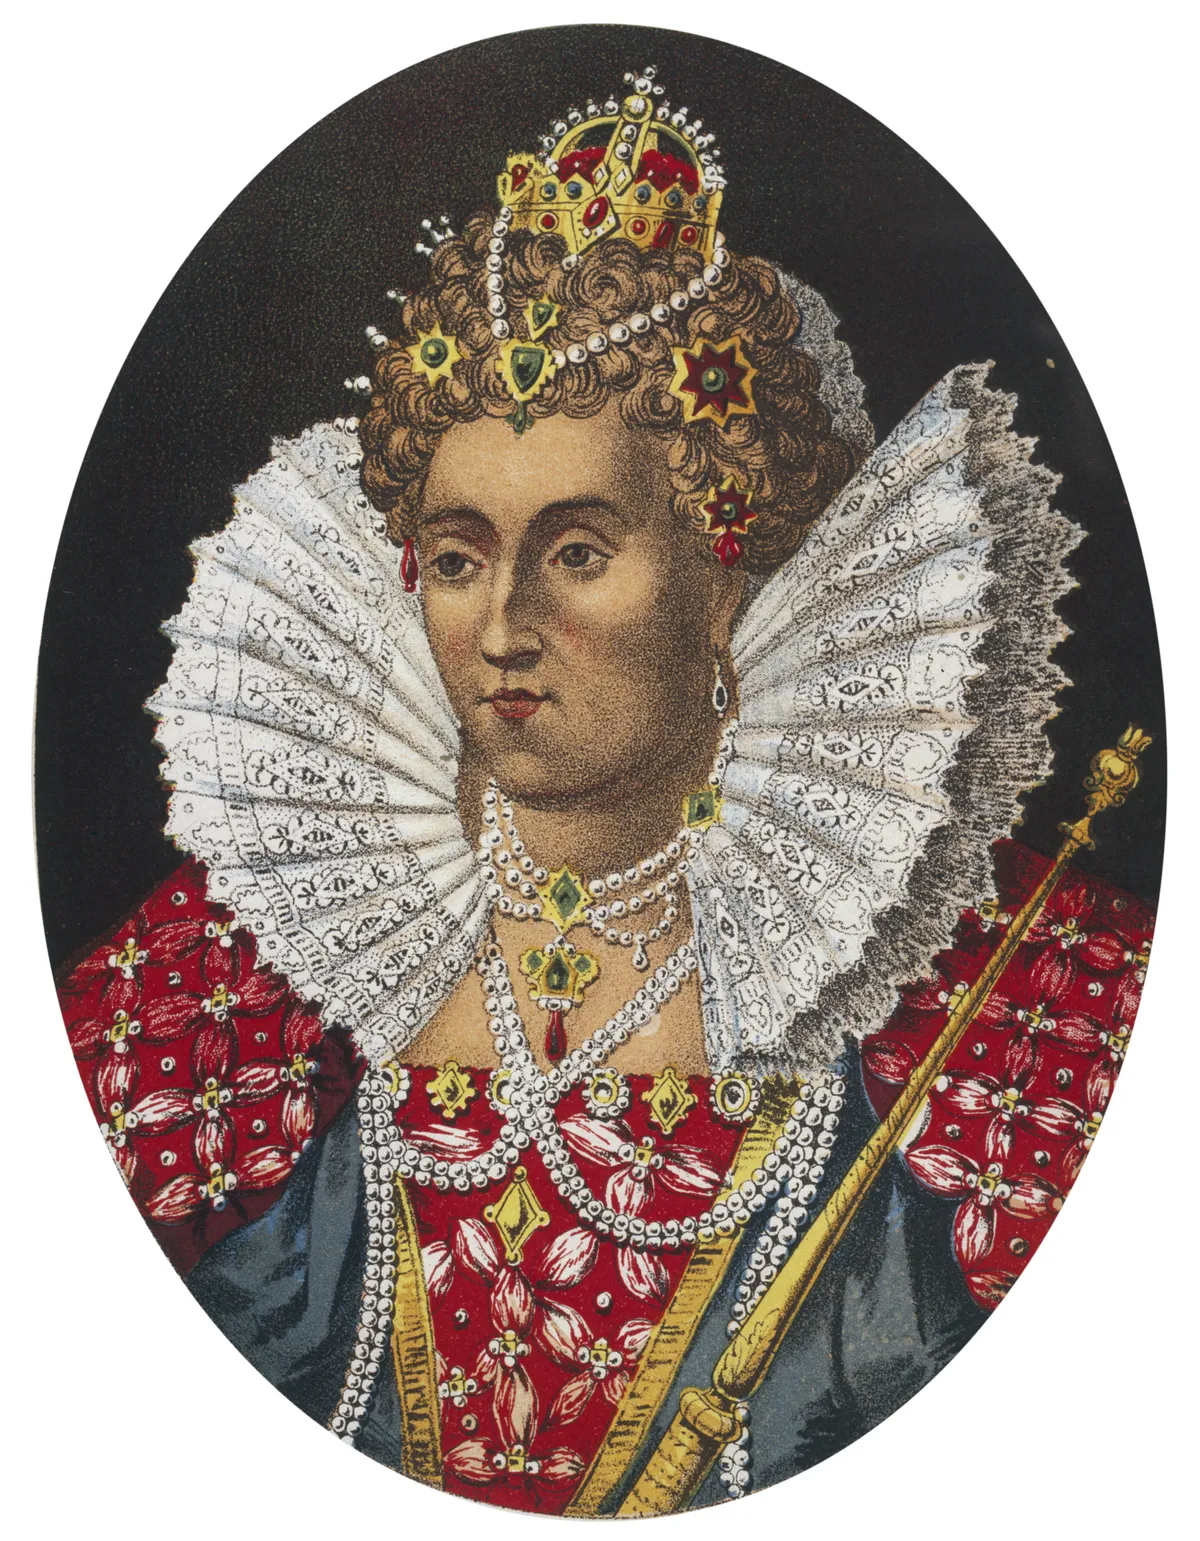 Kuninganna Elizabeth I